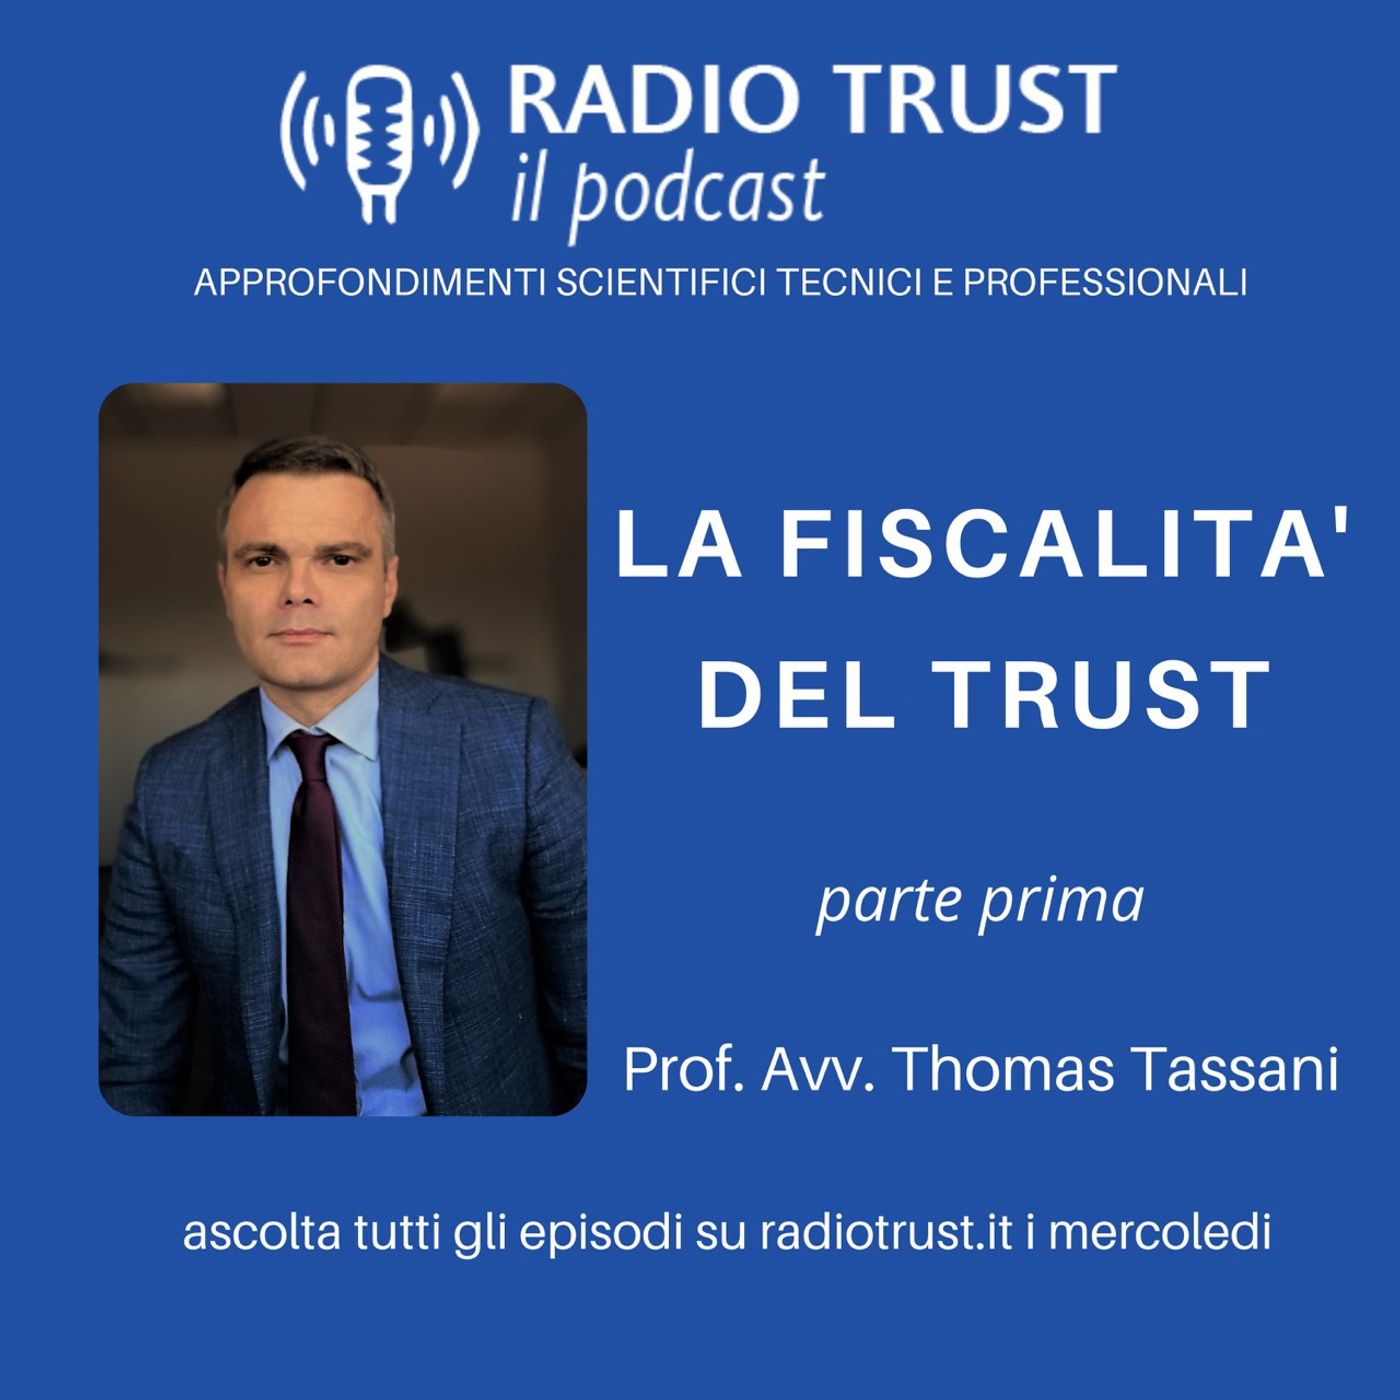 La fiscalità del Trust (parte prima) - Prof. Avv. Thomas Tassani